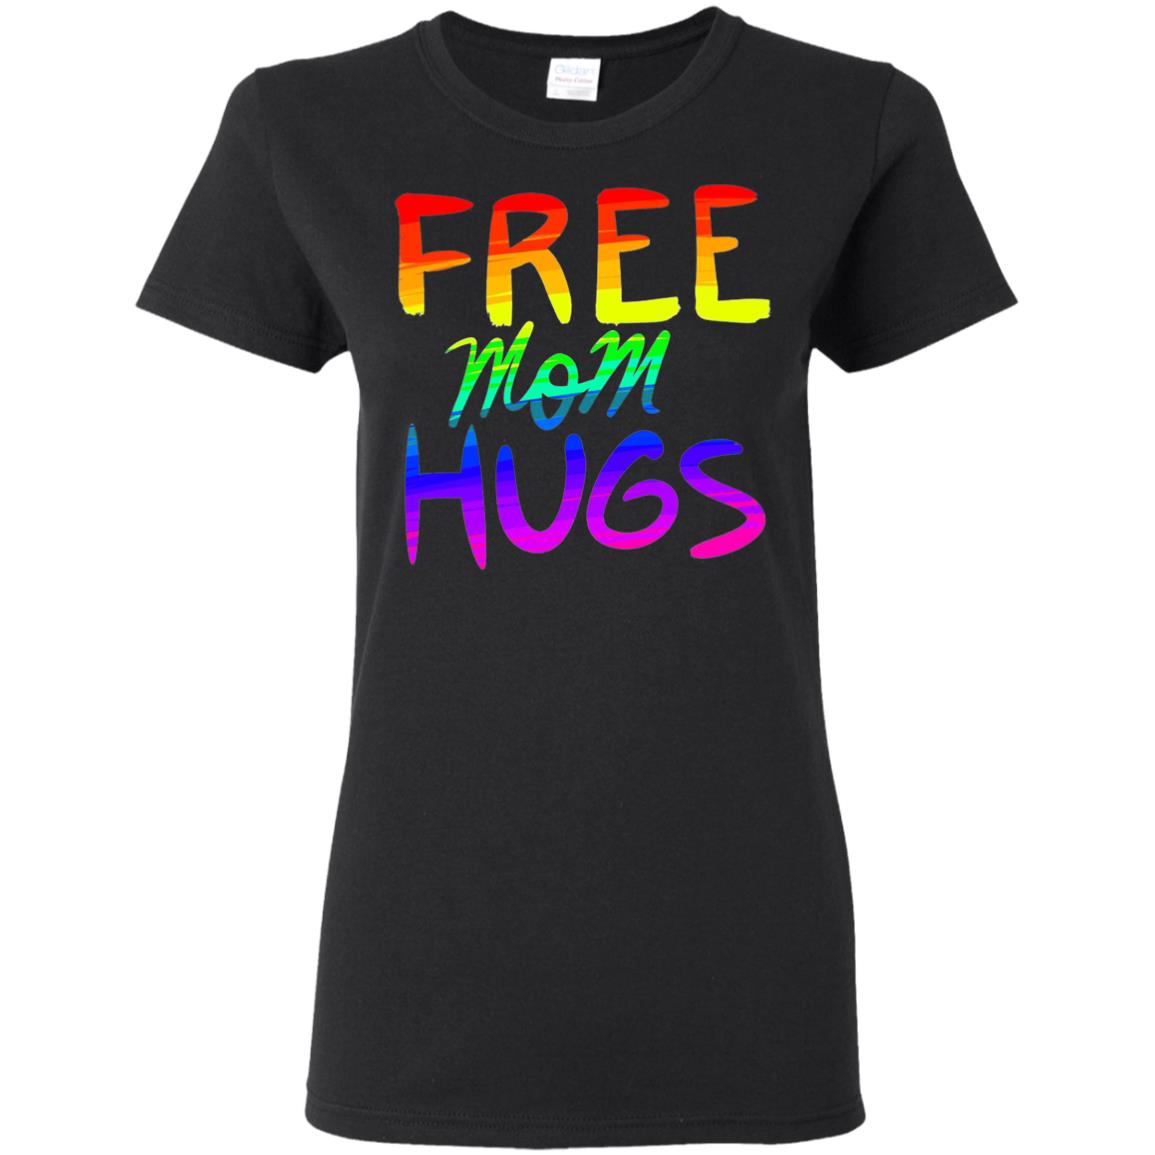 Free Mom Hugs Tshirt, Free Mom Hugs Rainbow Gay Pride Tshirt 2019